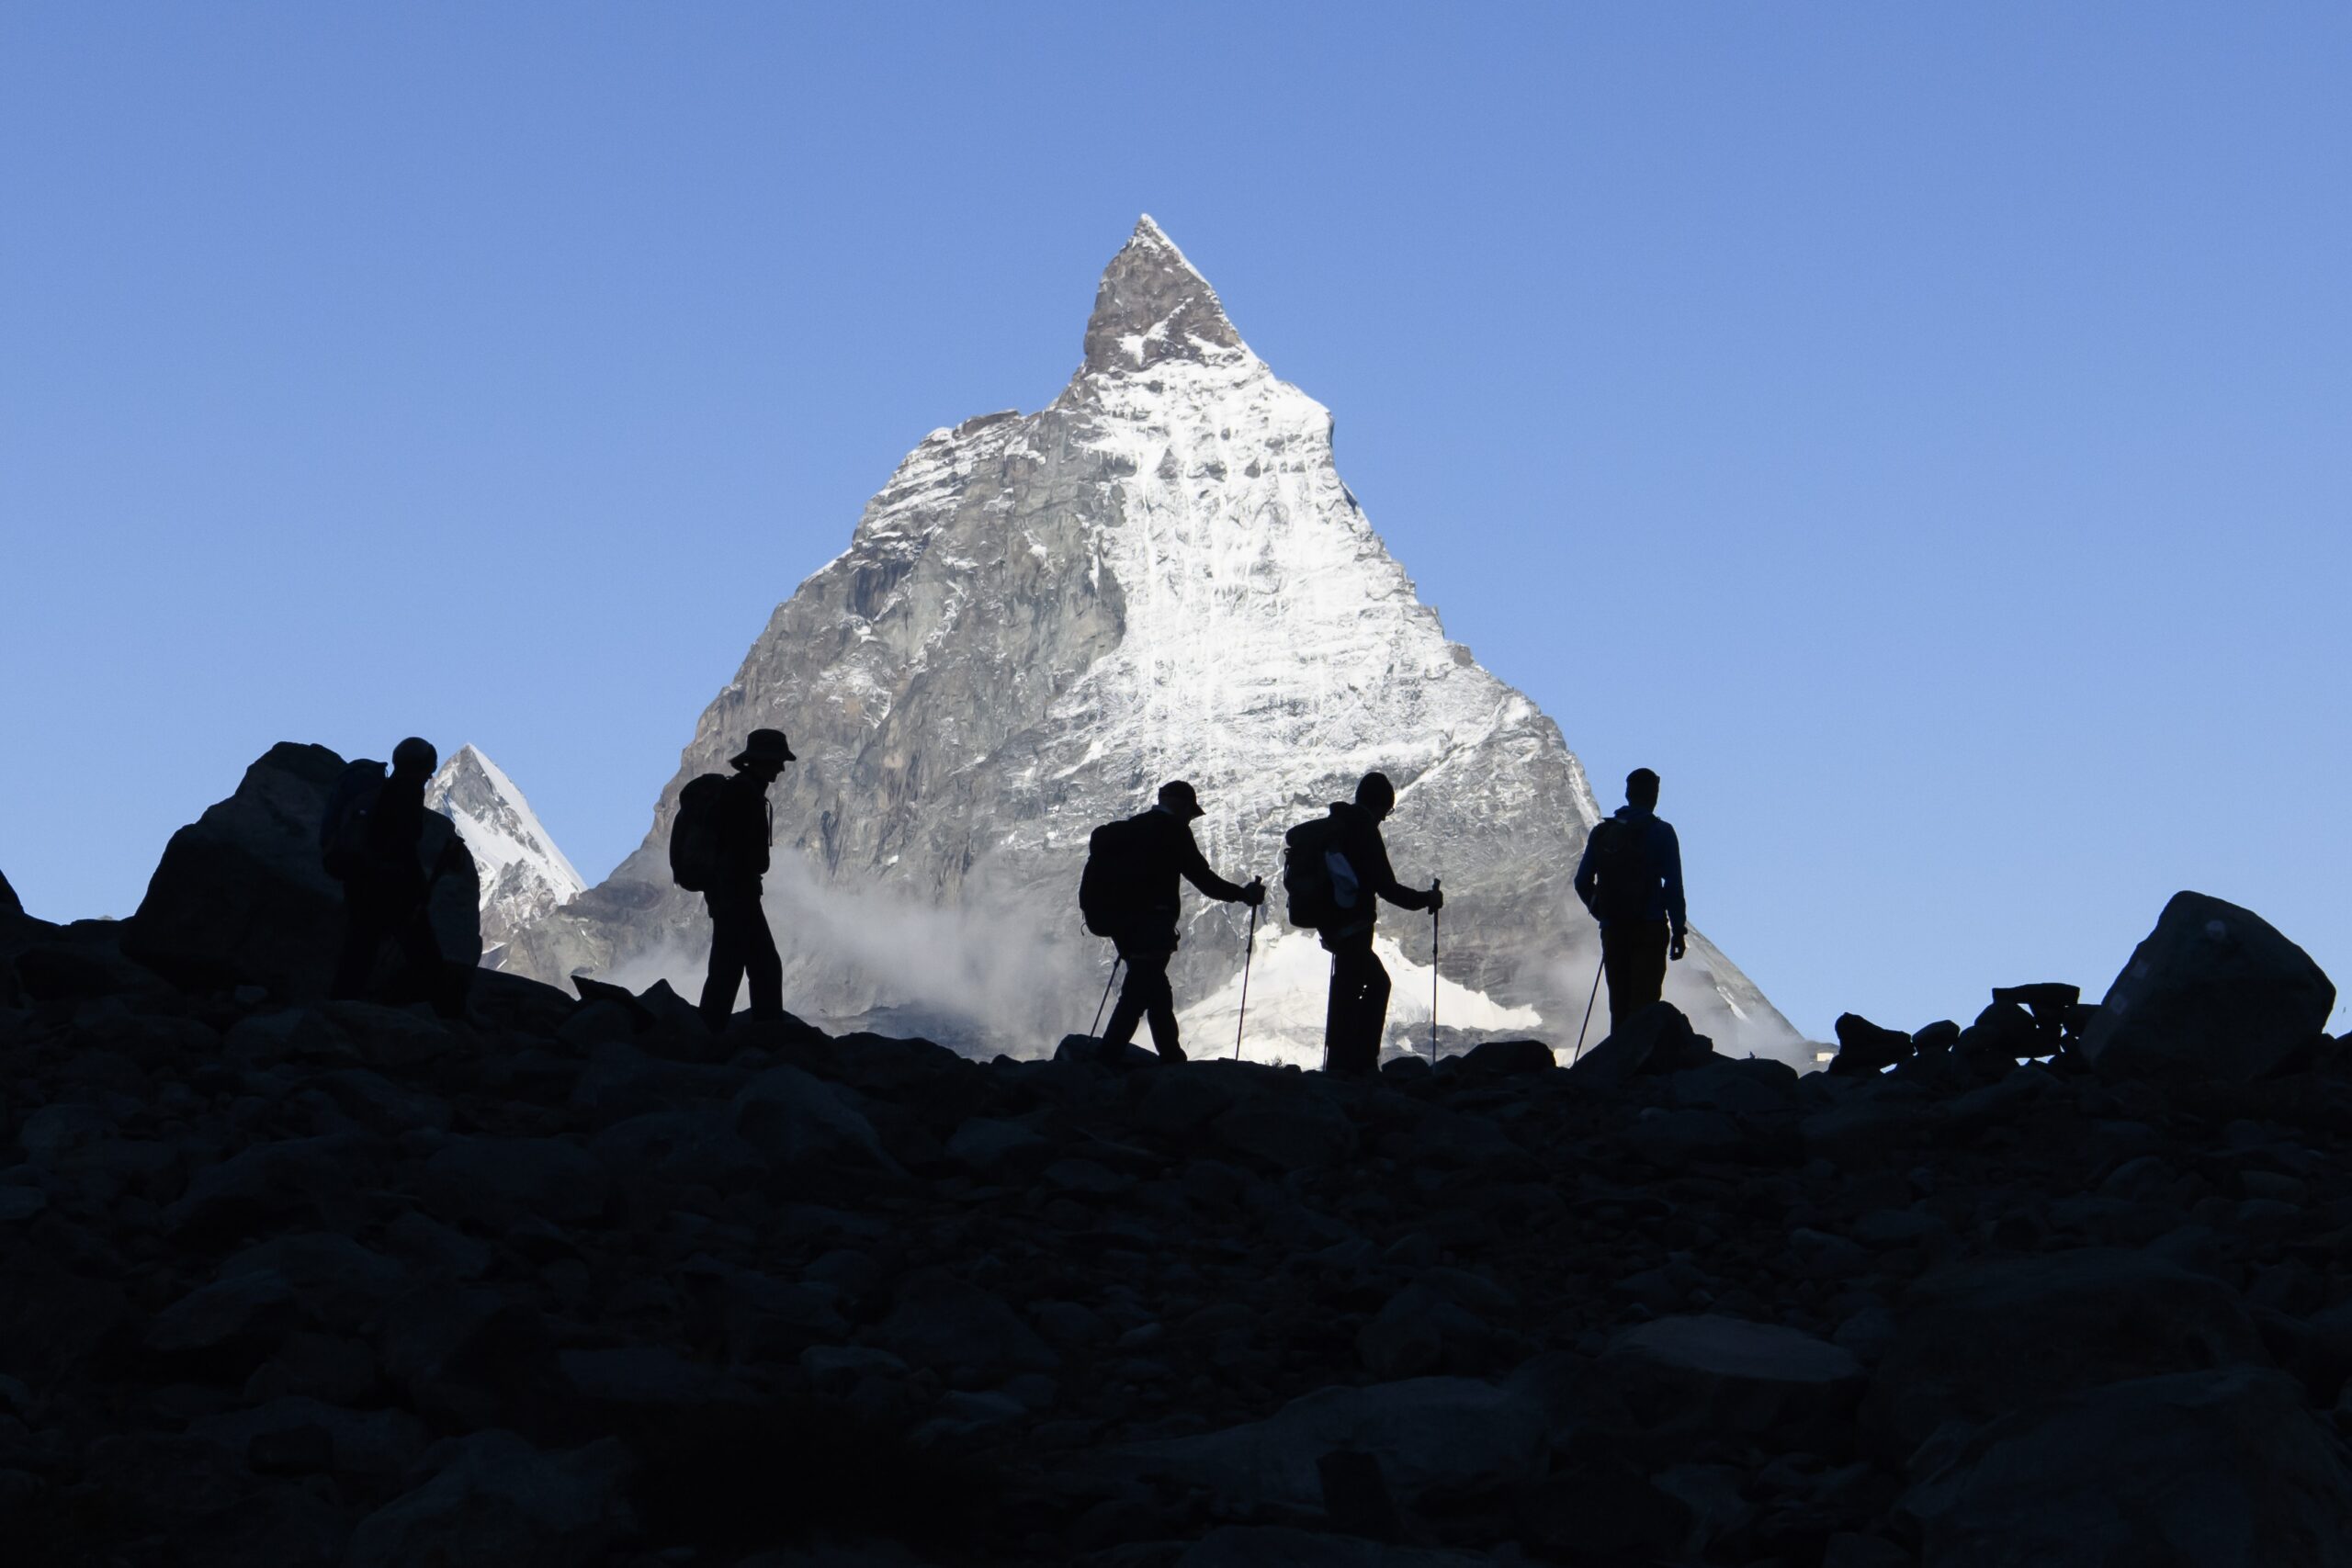 De beroemde Matterhorn (4478 meter) in de Zwitserse Alpen. Foto: EPA/ANTHONY ANEX